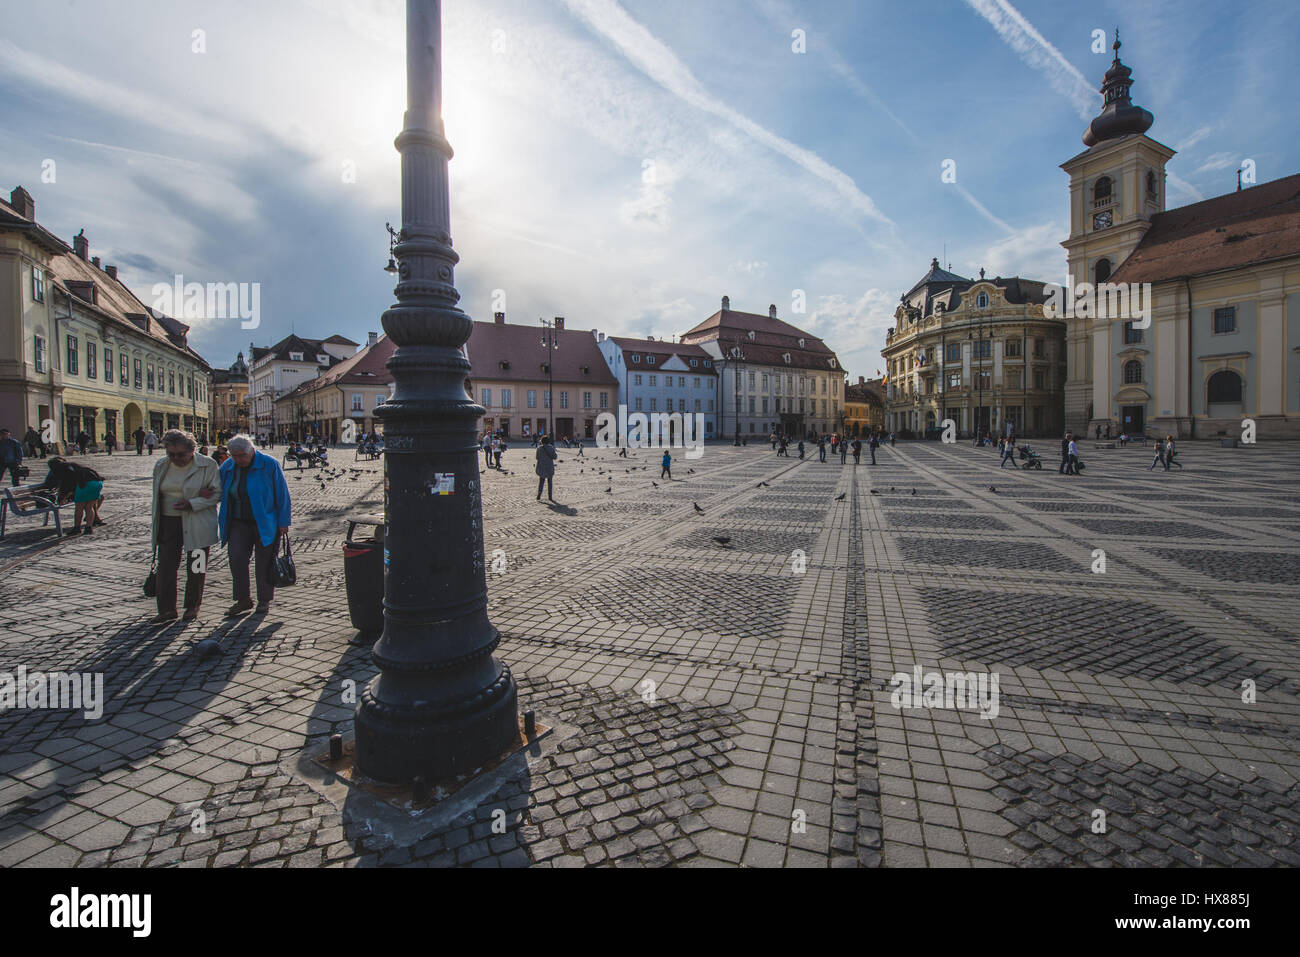 März 2017: das rumänische Stadt von Sibiu Foto: Cronos/Alessandro Bosio Stockfoto